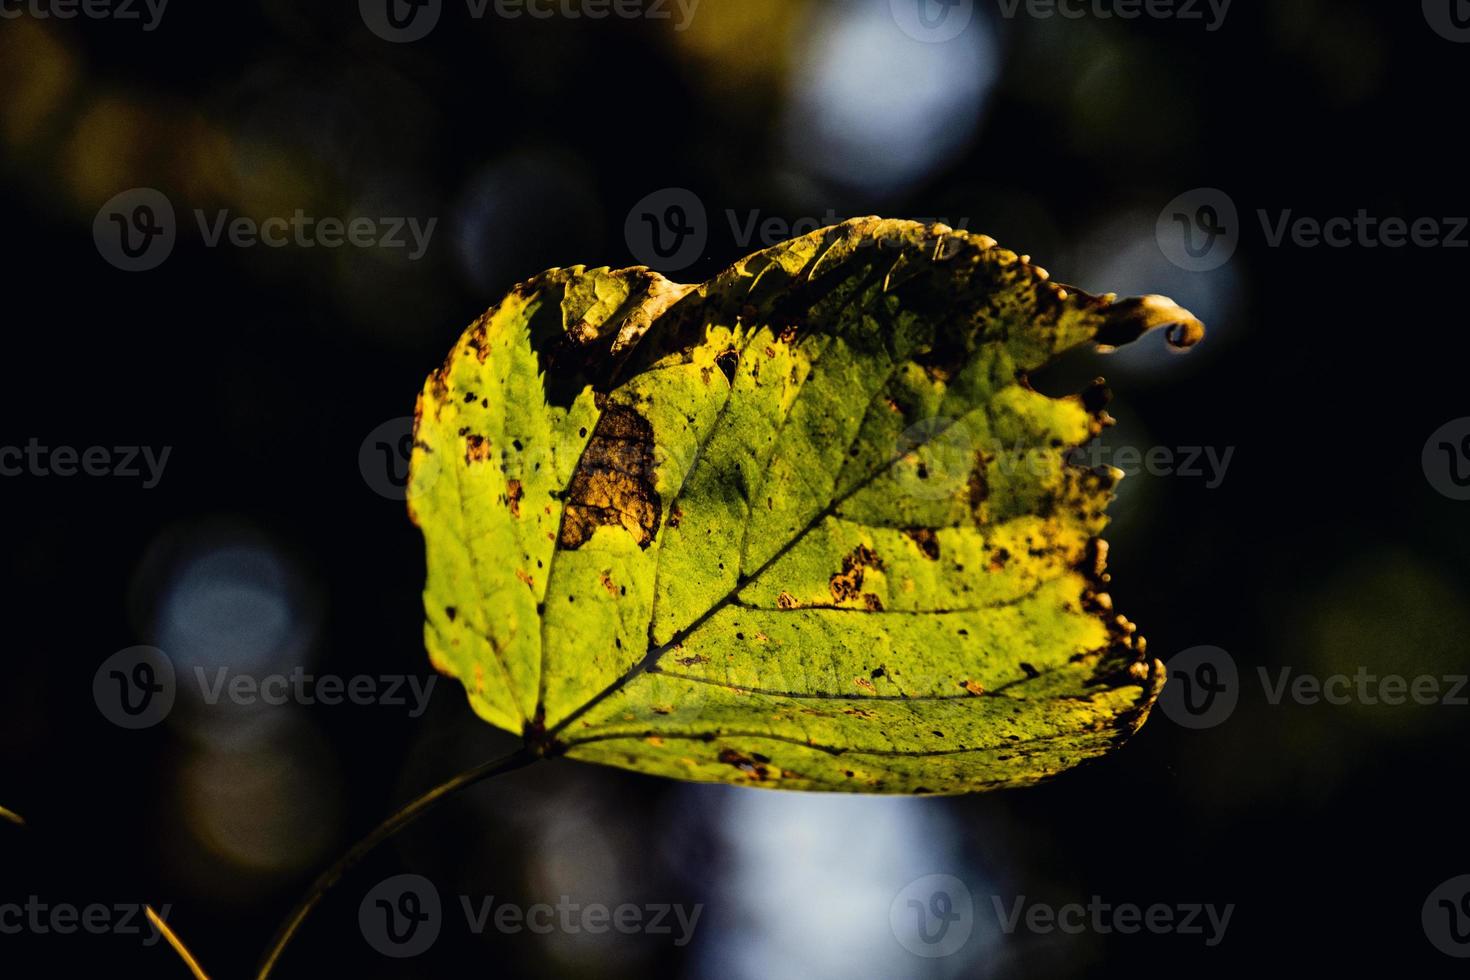 autunno le foglie su un' albero ramo illuminato di caldo dolce autunno sole foto